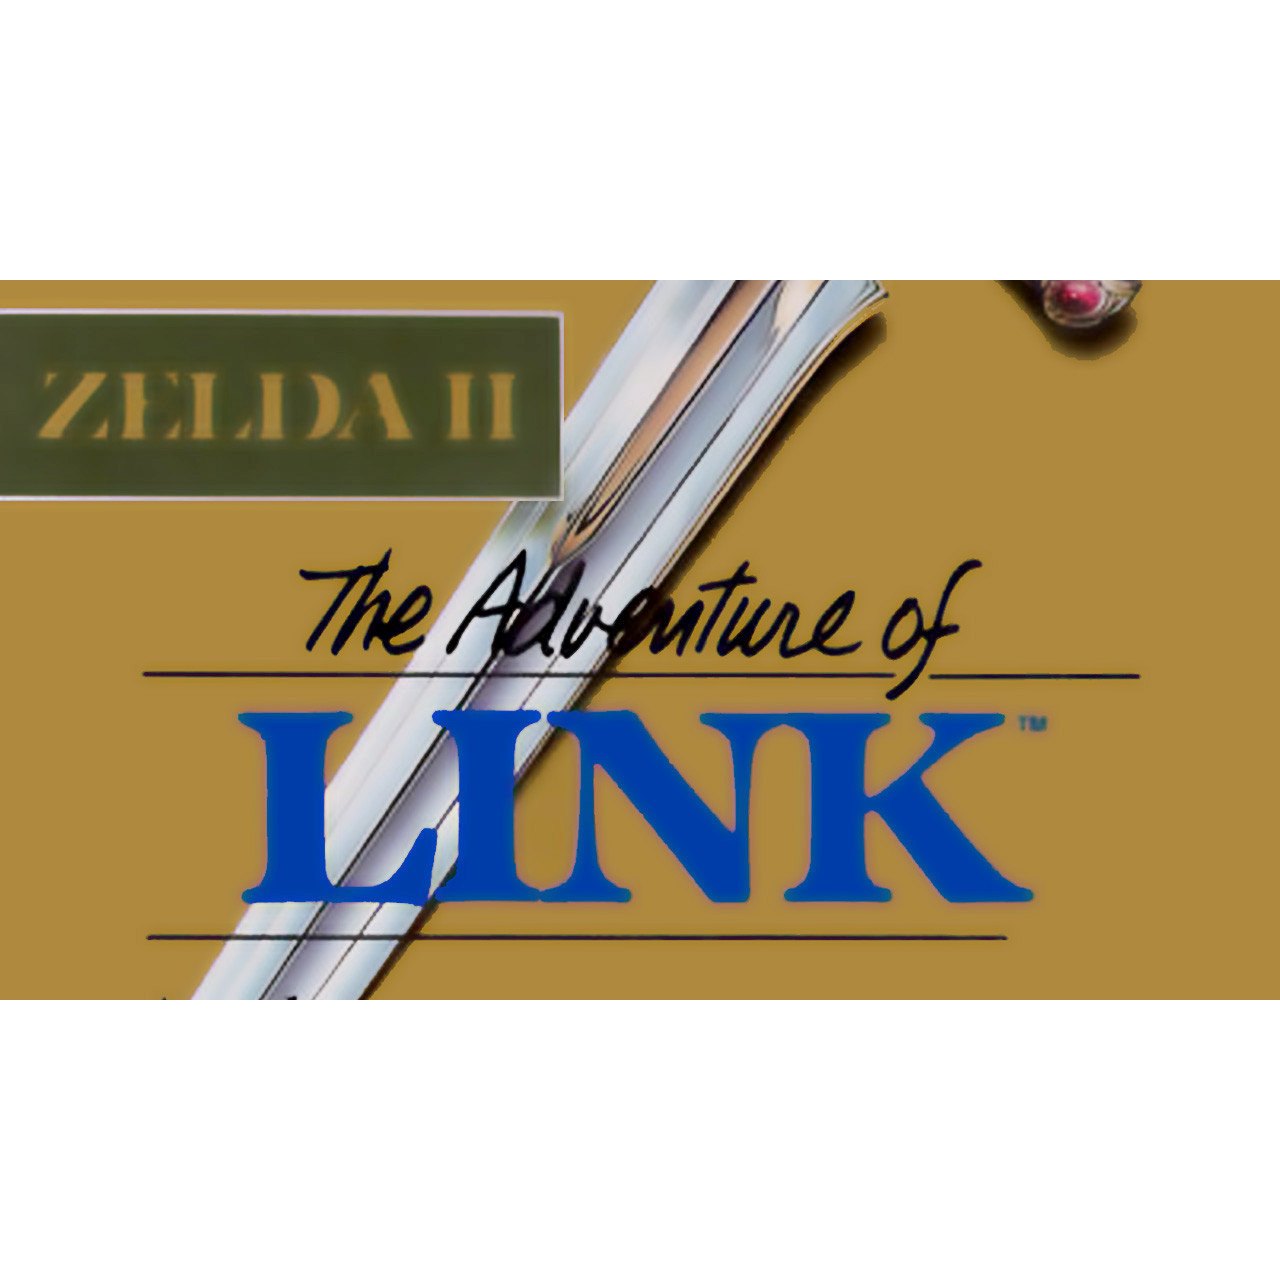 Zelda II: The Adventure of Link NES Nintendo Game